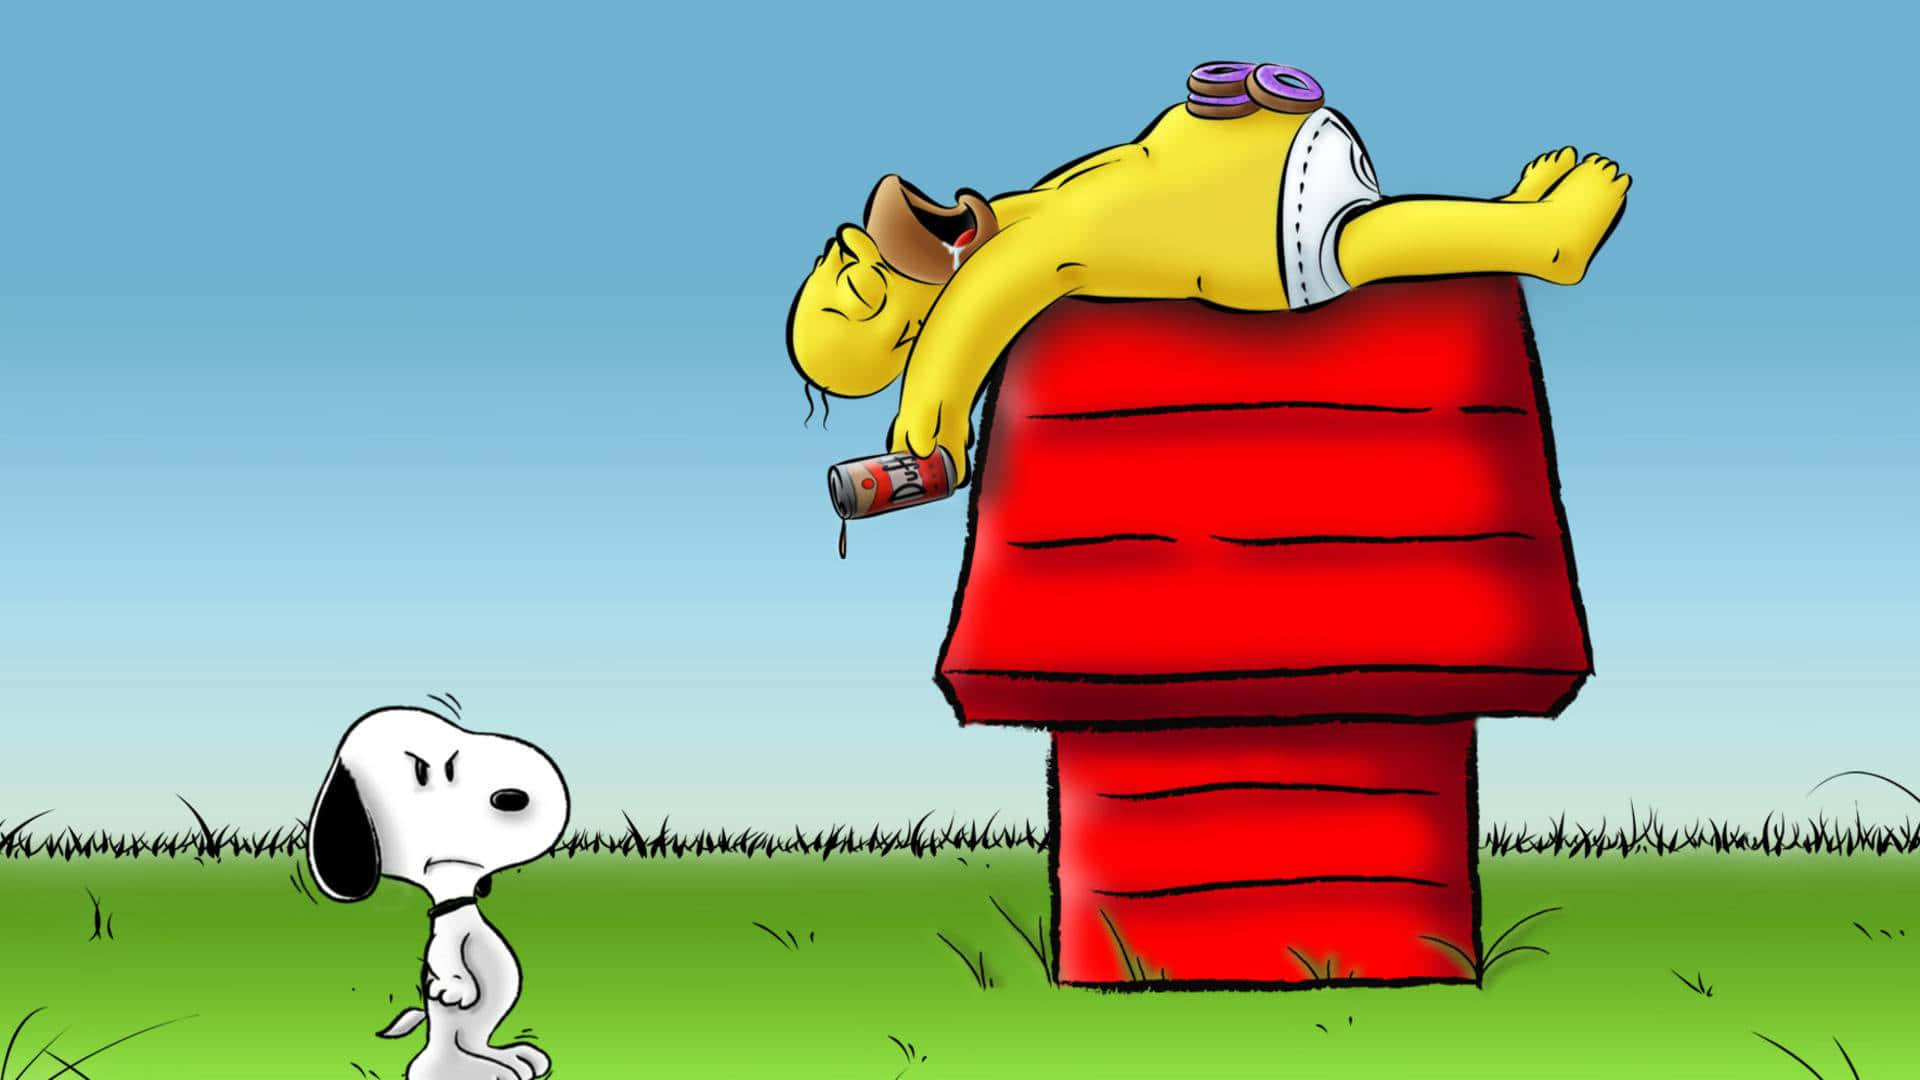 Homer og Snoopy krydsning morsomme tegnefilm billeder tapet